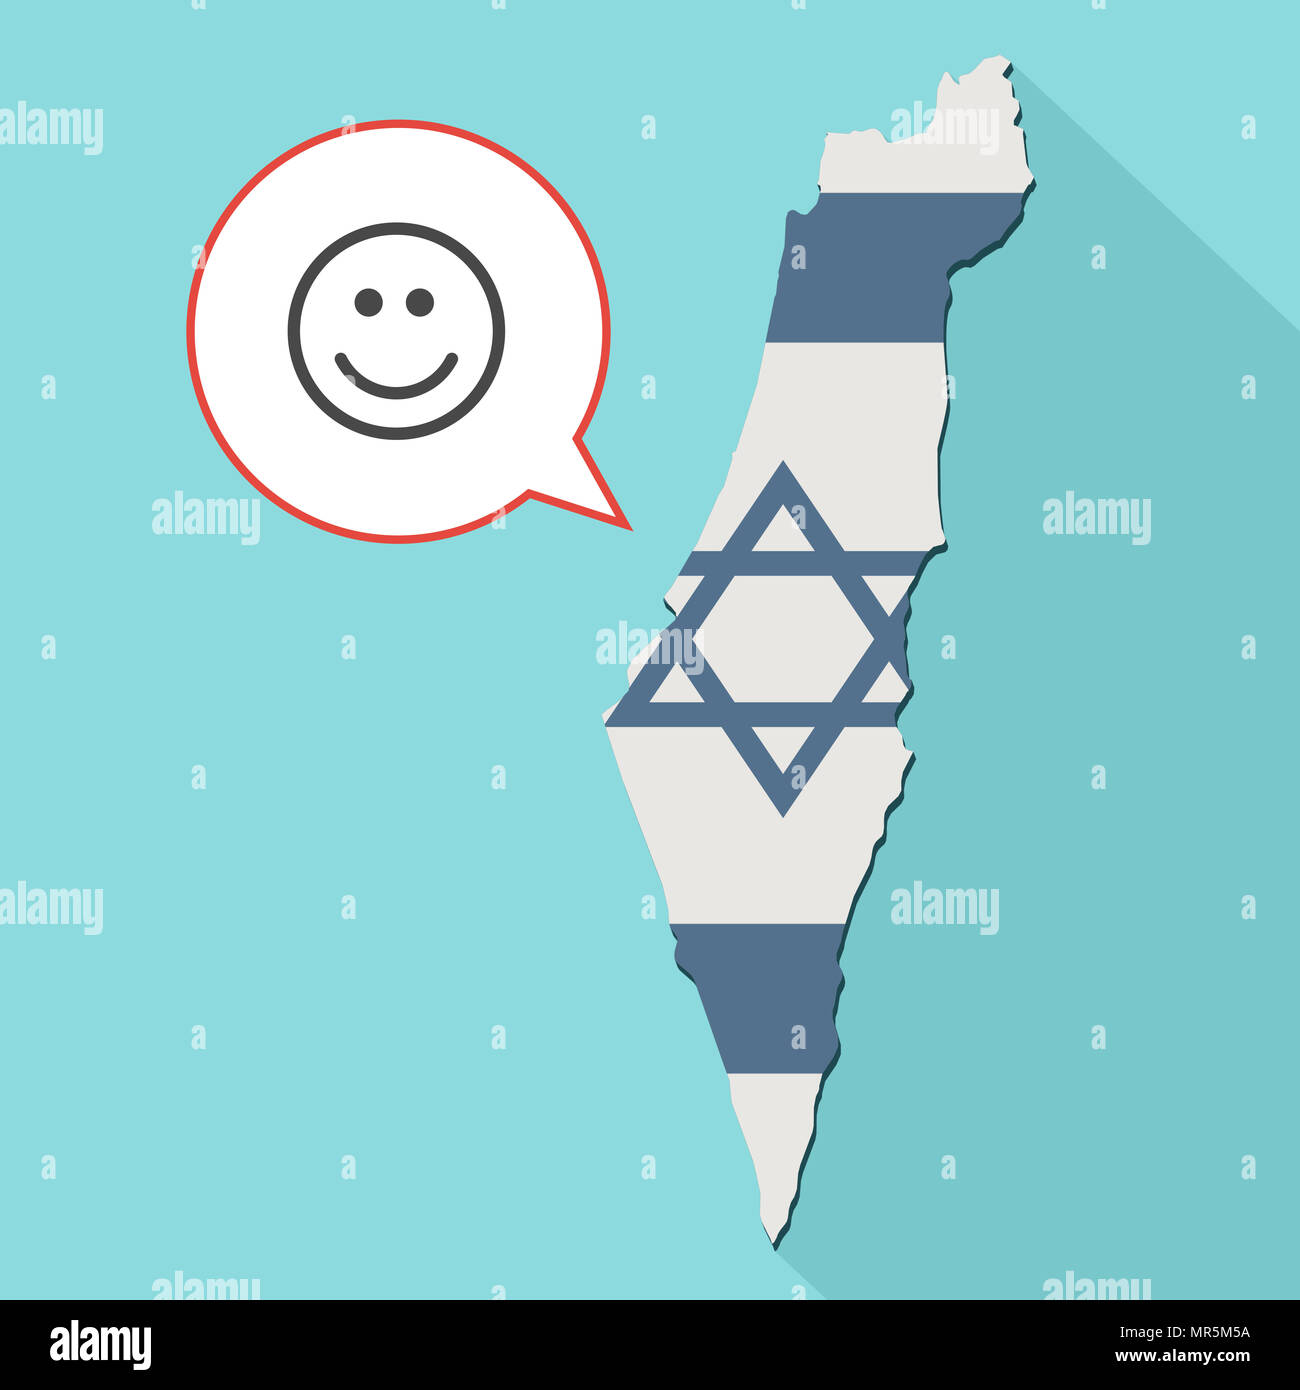 Illustrazione di una lunga ombra Israele mappa con la sua bandiera e un palloncino di fumetti con sorriso faccia emoji Foto Stock